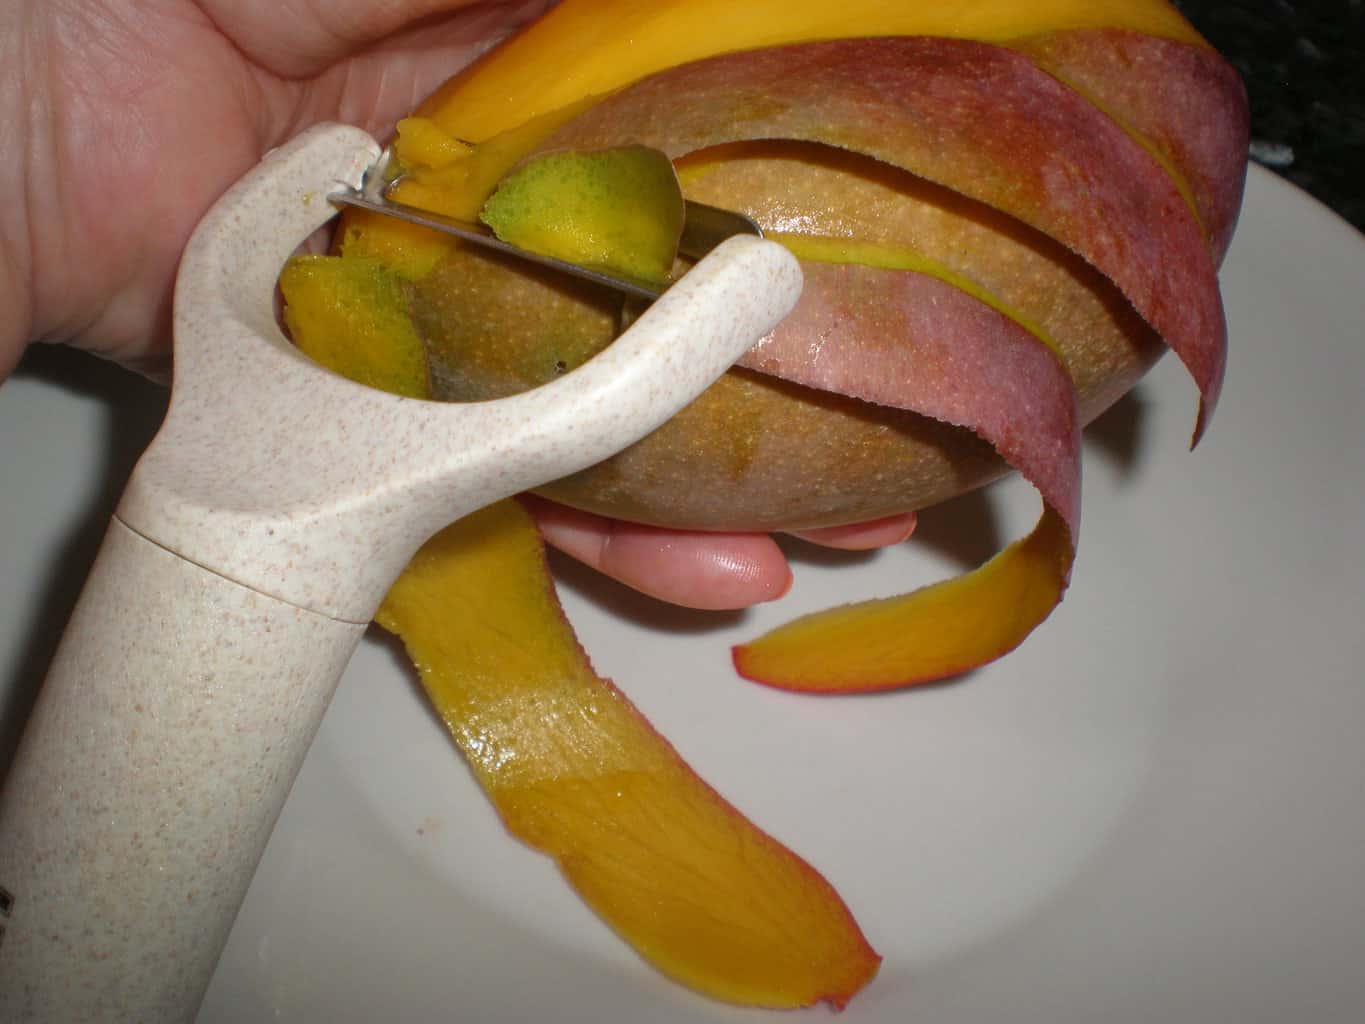 Pelar el mango